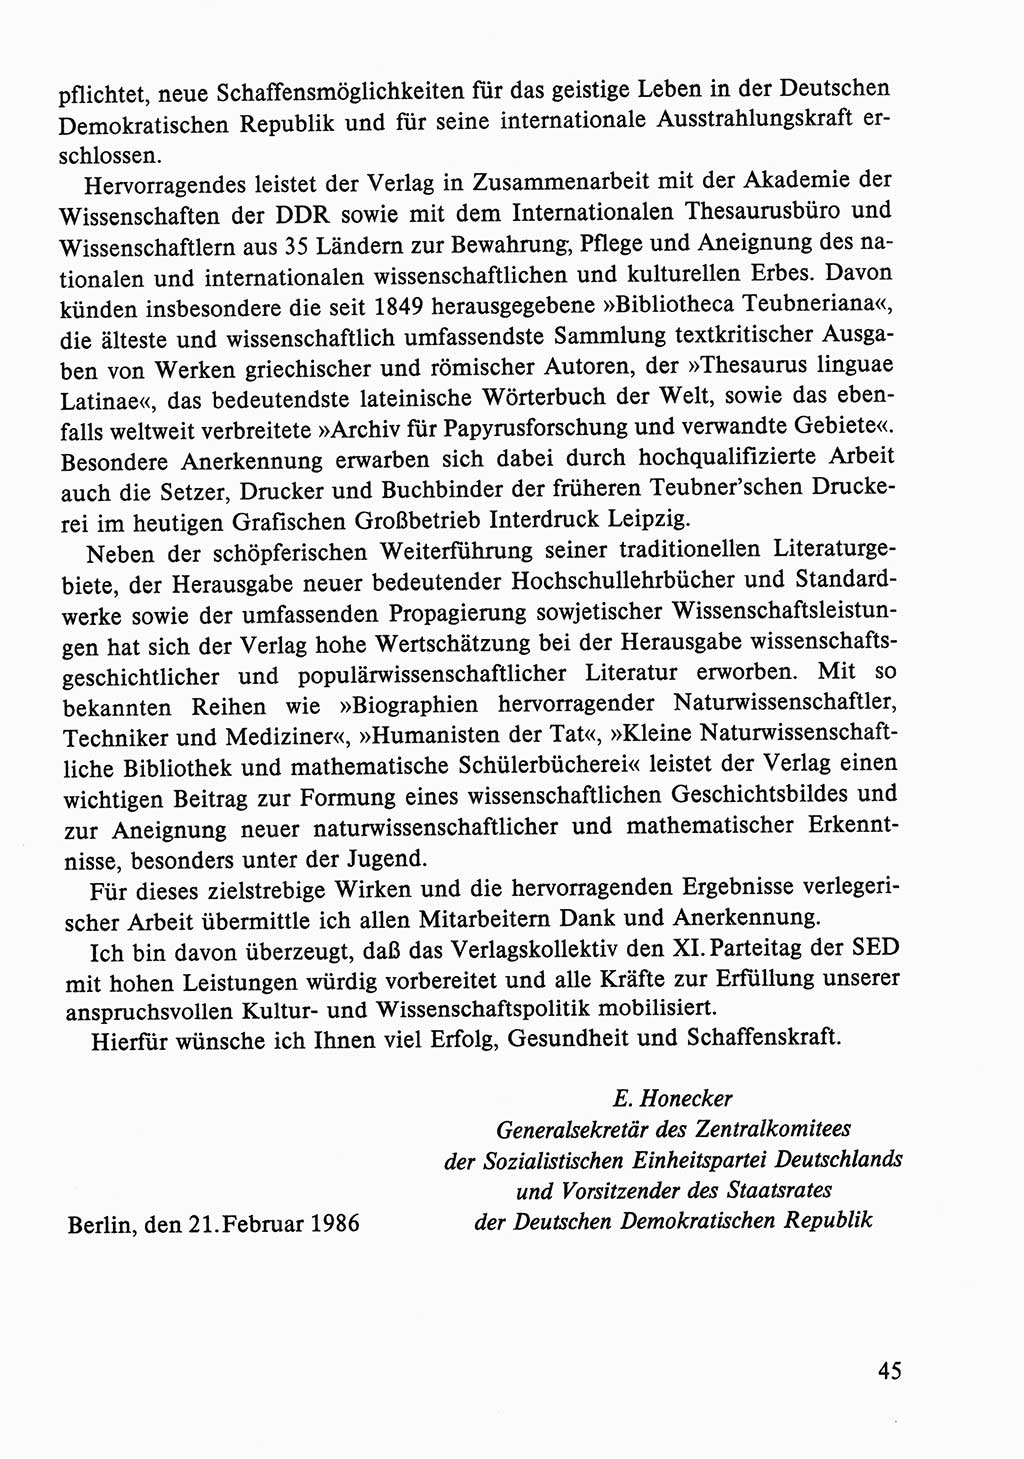 Dokumente der Sozialistischen Einheitspartei Deutschlands (SED) [Deutsche Demokratische Republik (DDR)] 1986-1987, Seite 45 (Dok. SED DDR 1986-1987, S. 45)